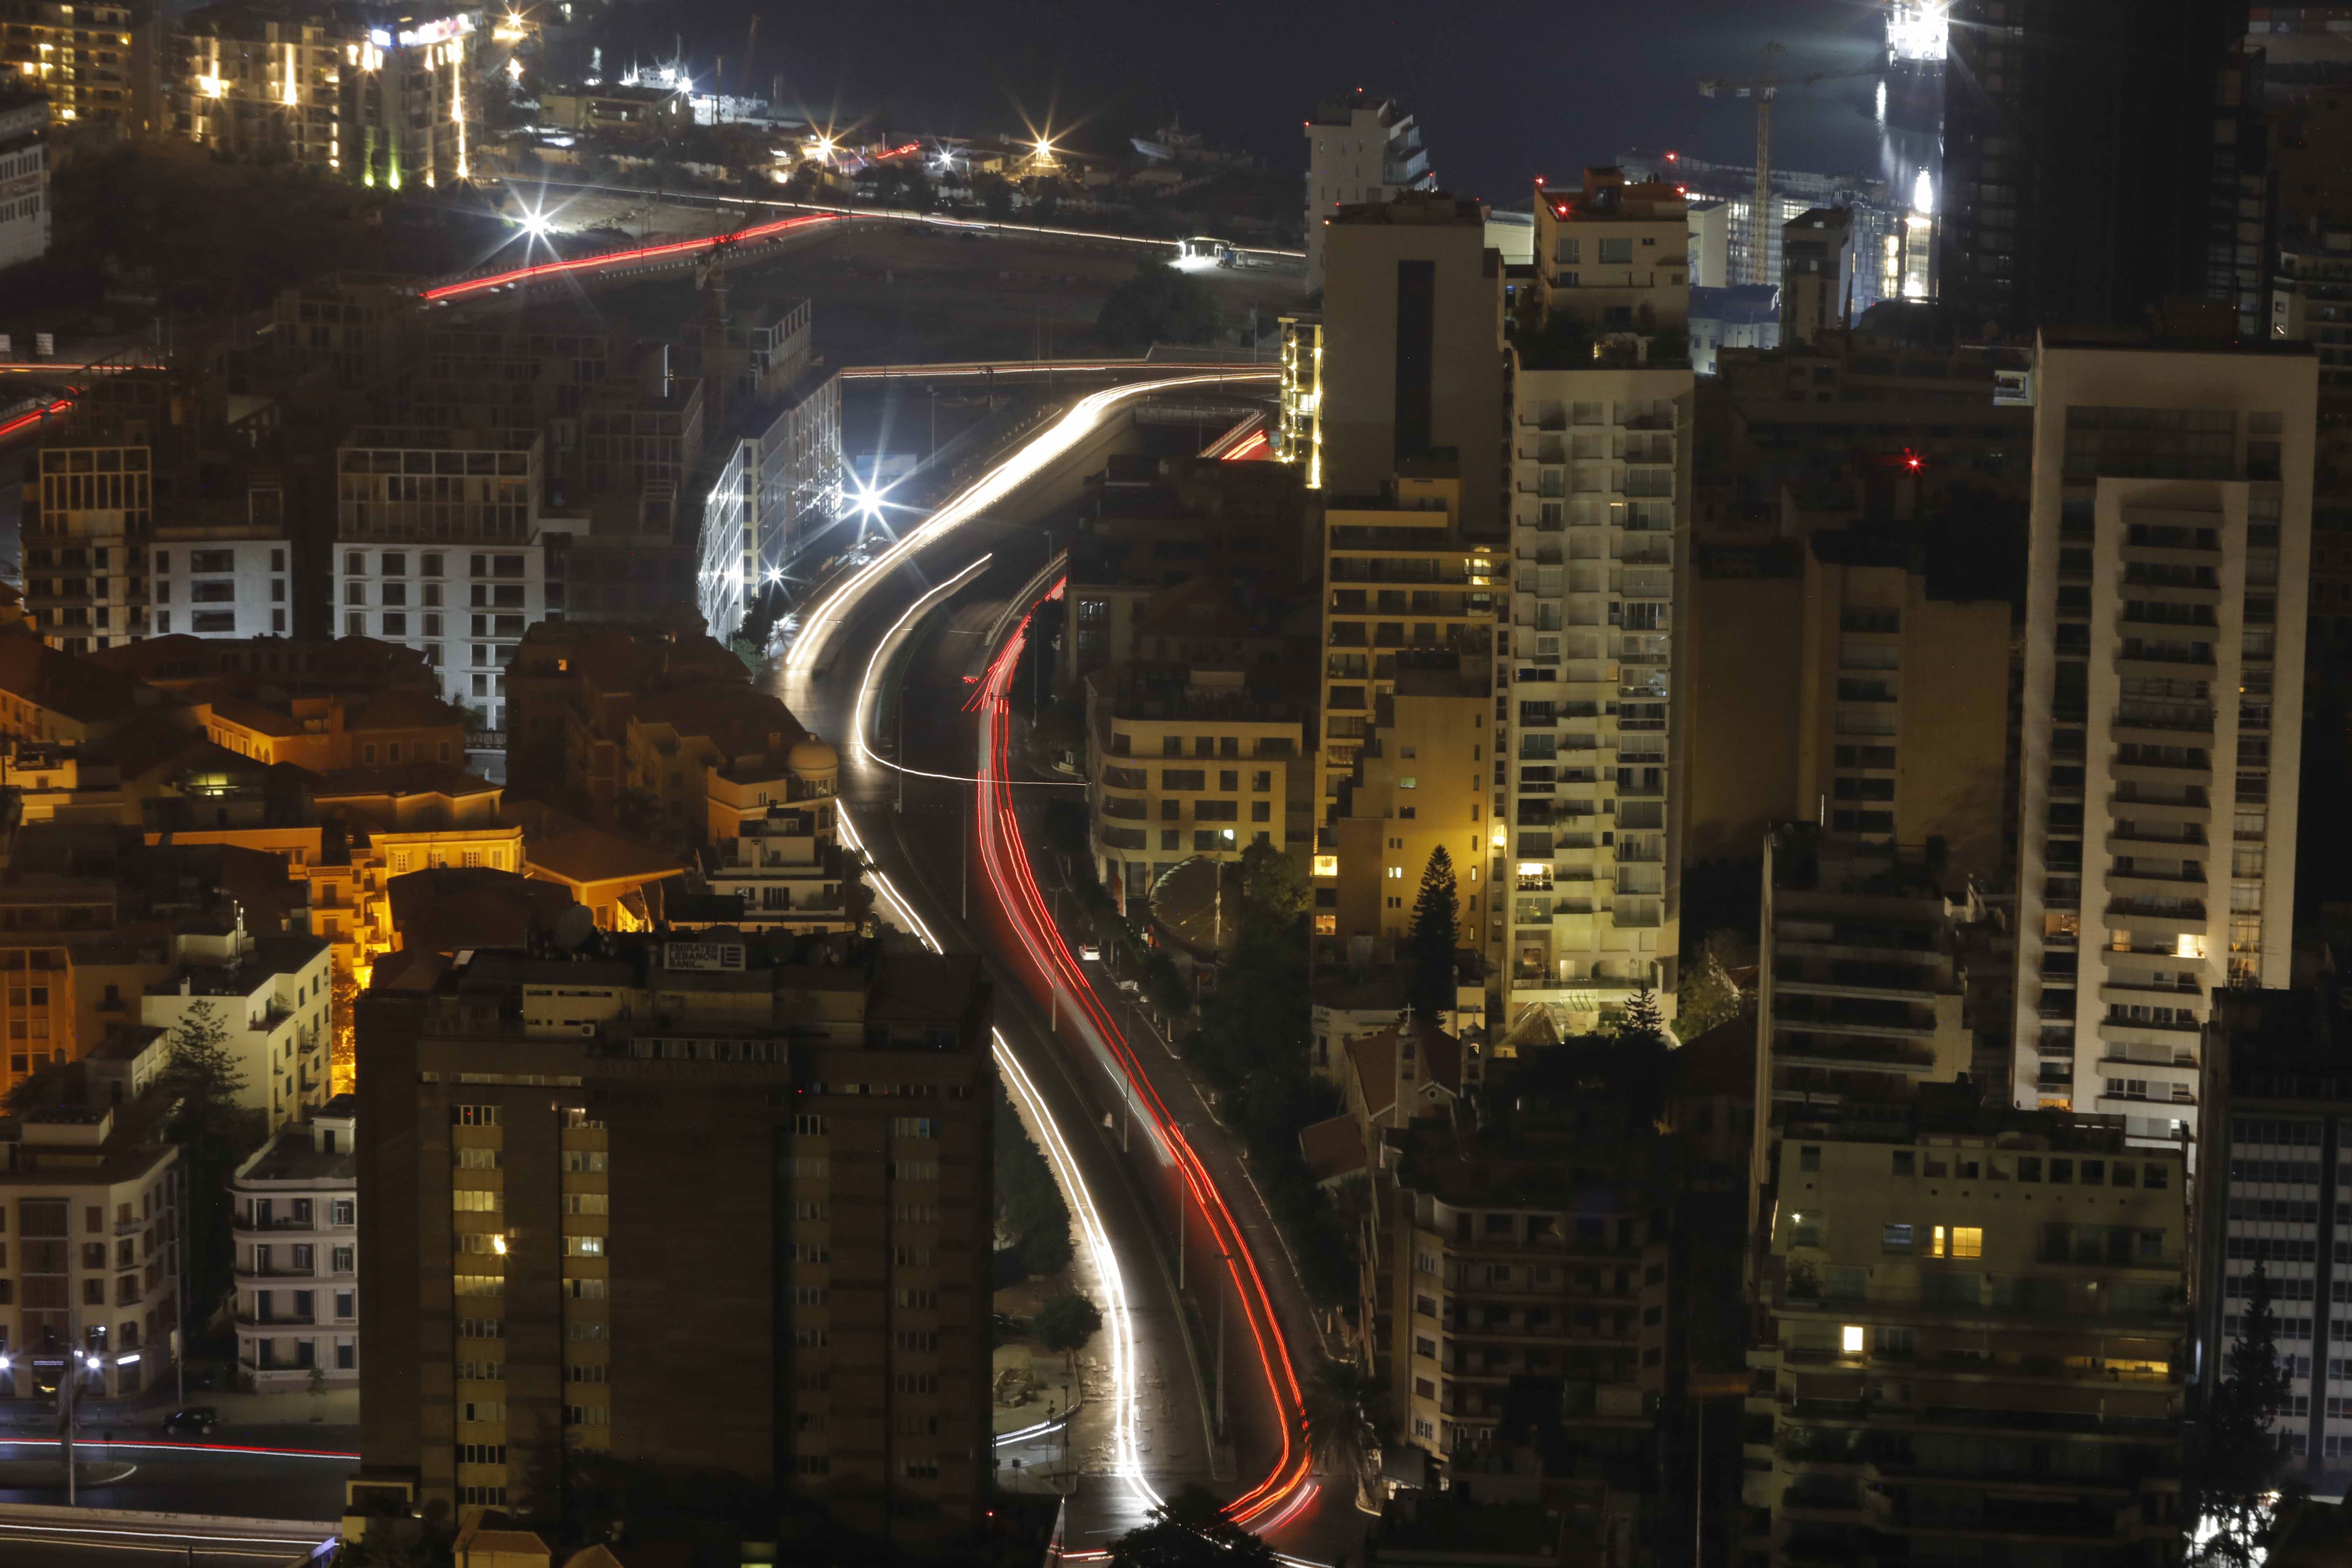 بيروت ليلاً - تصوير مارك فياض